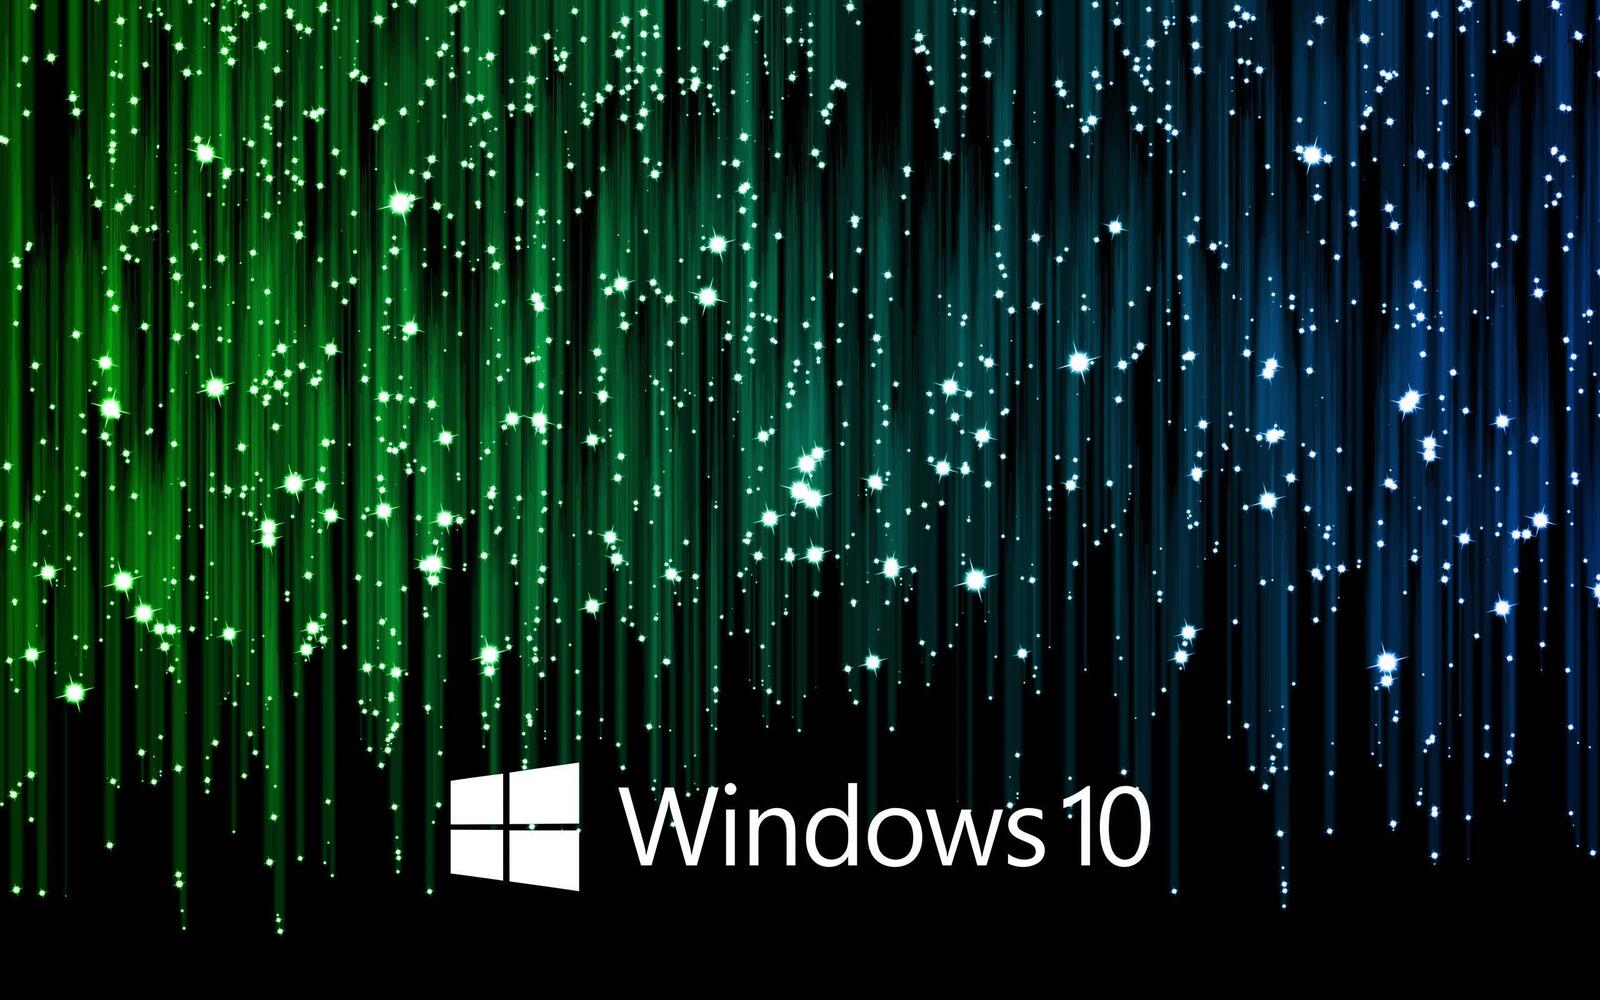 免费照片Windows 10 矩阵